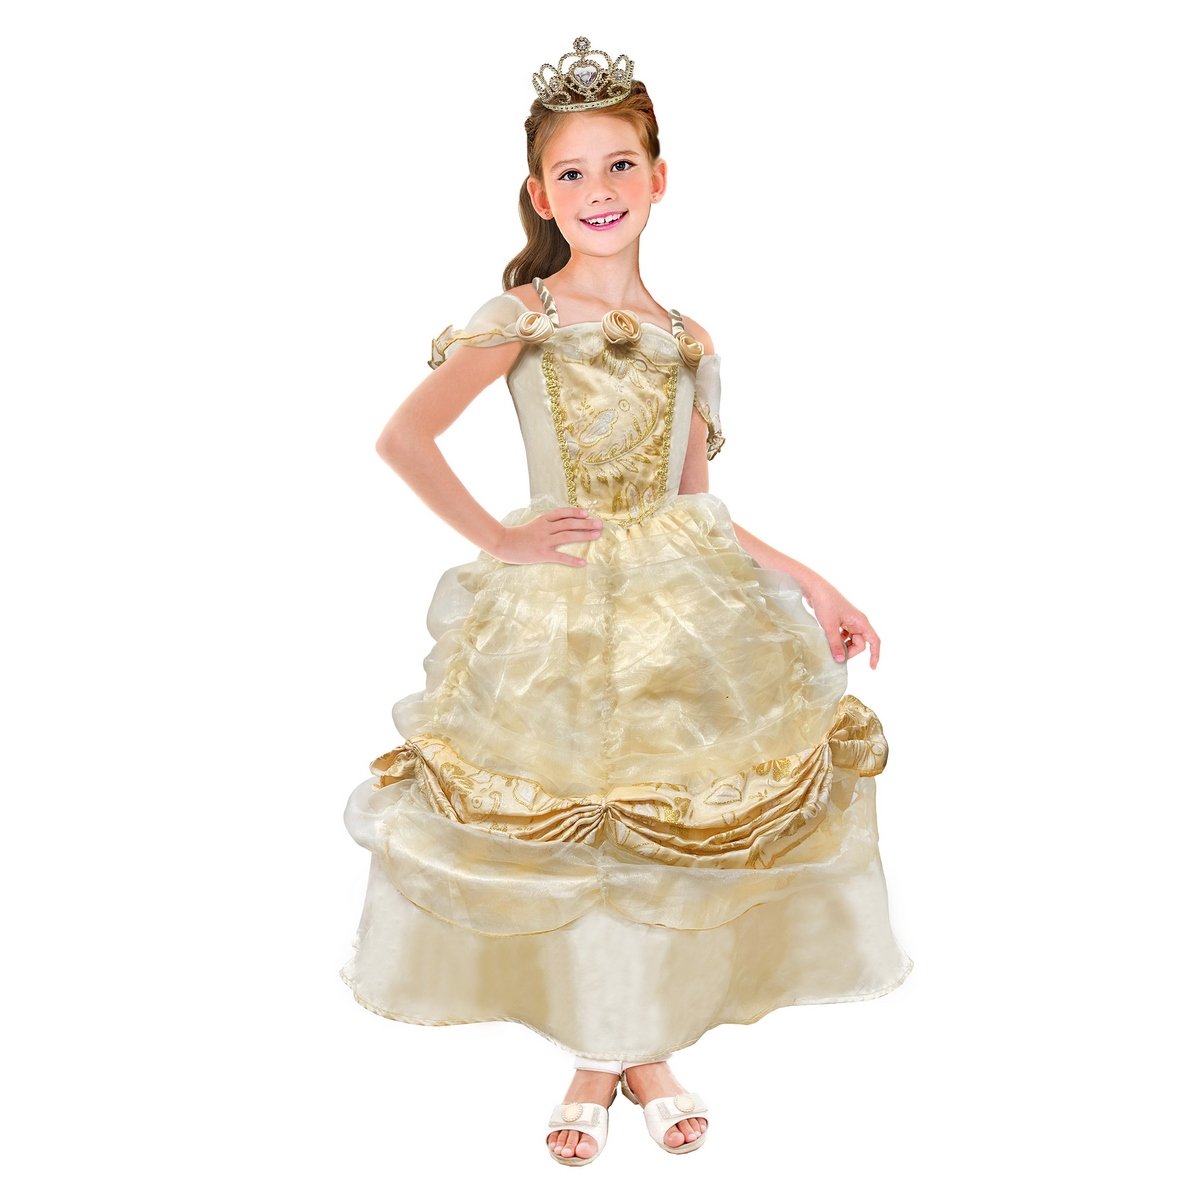 Déguisement Luxe Princesse Bleue taille 3-4 ans - La Grande Récré